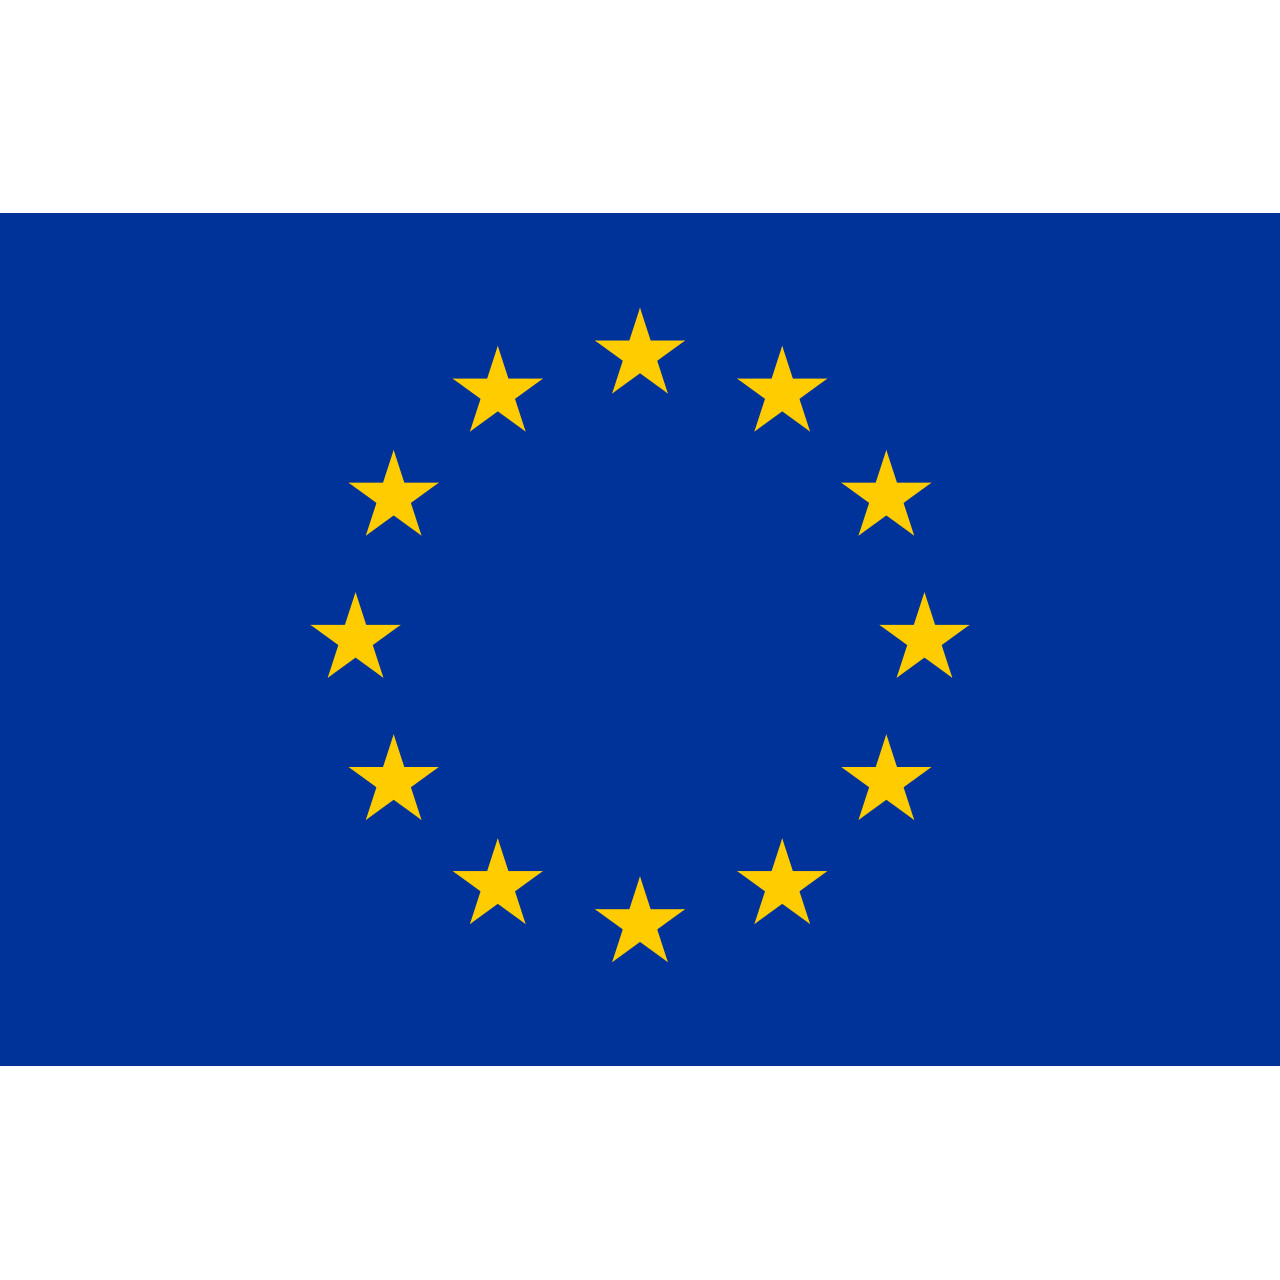 Σημαία 30x50 Ορθογώνια Ευρωπαική ένωση